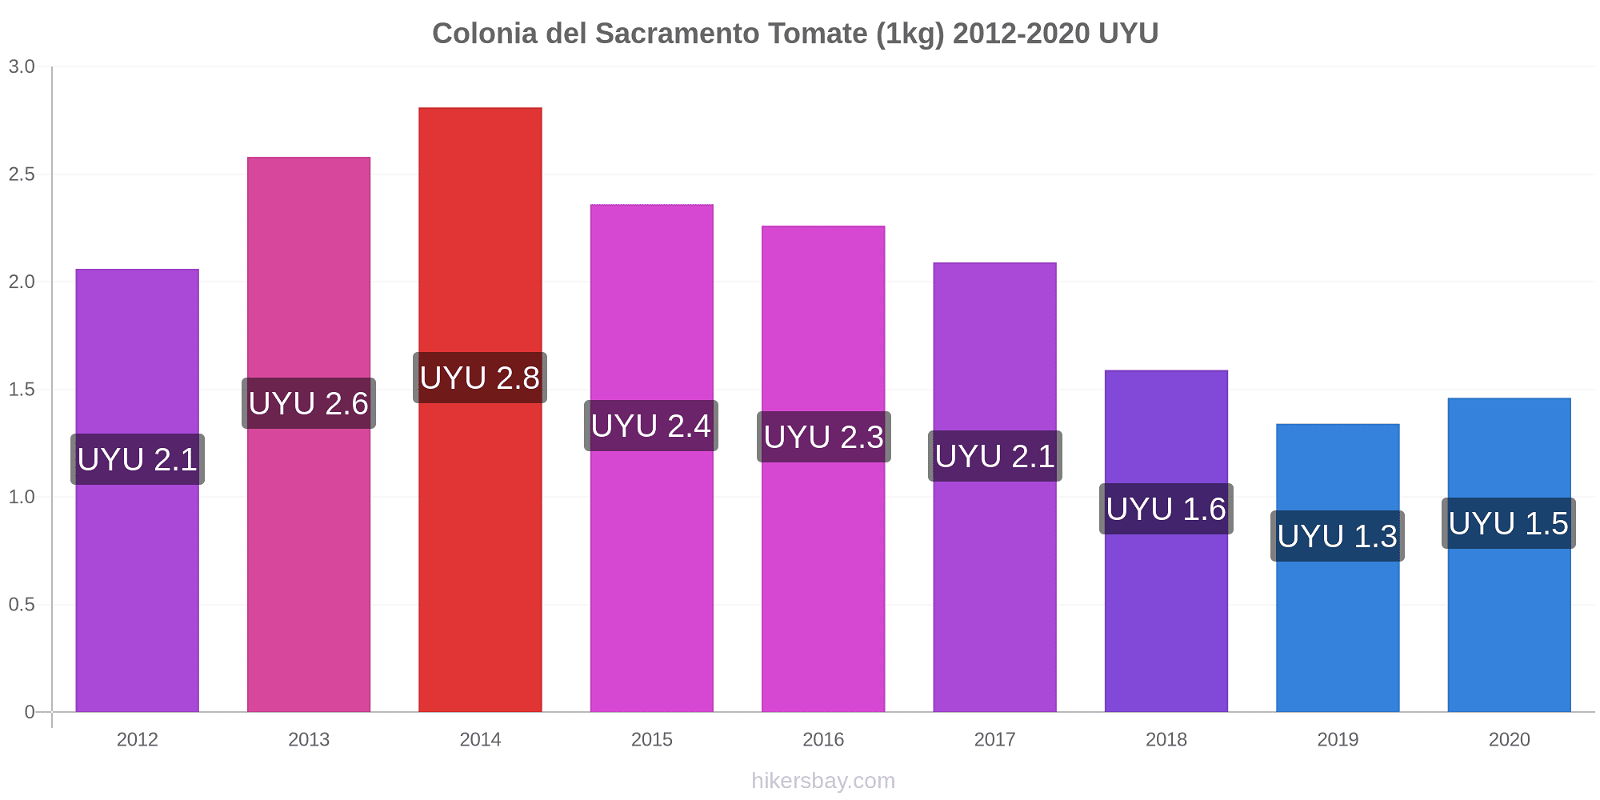 Colonia del Sacramento changements de prix Tomate (1kg) hikersbay.com